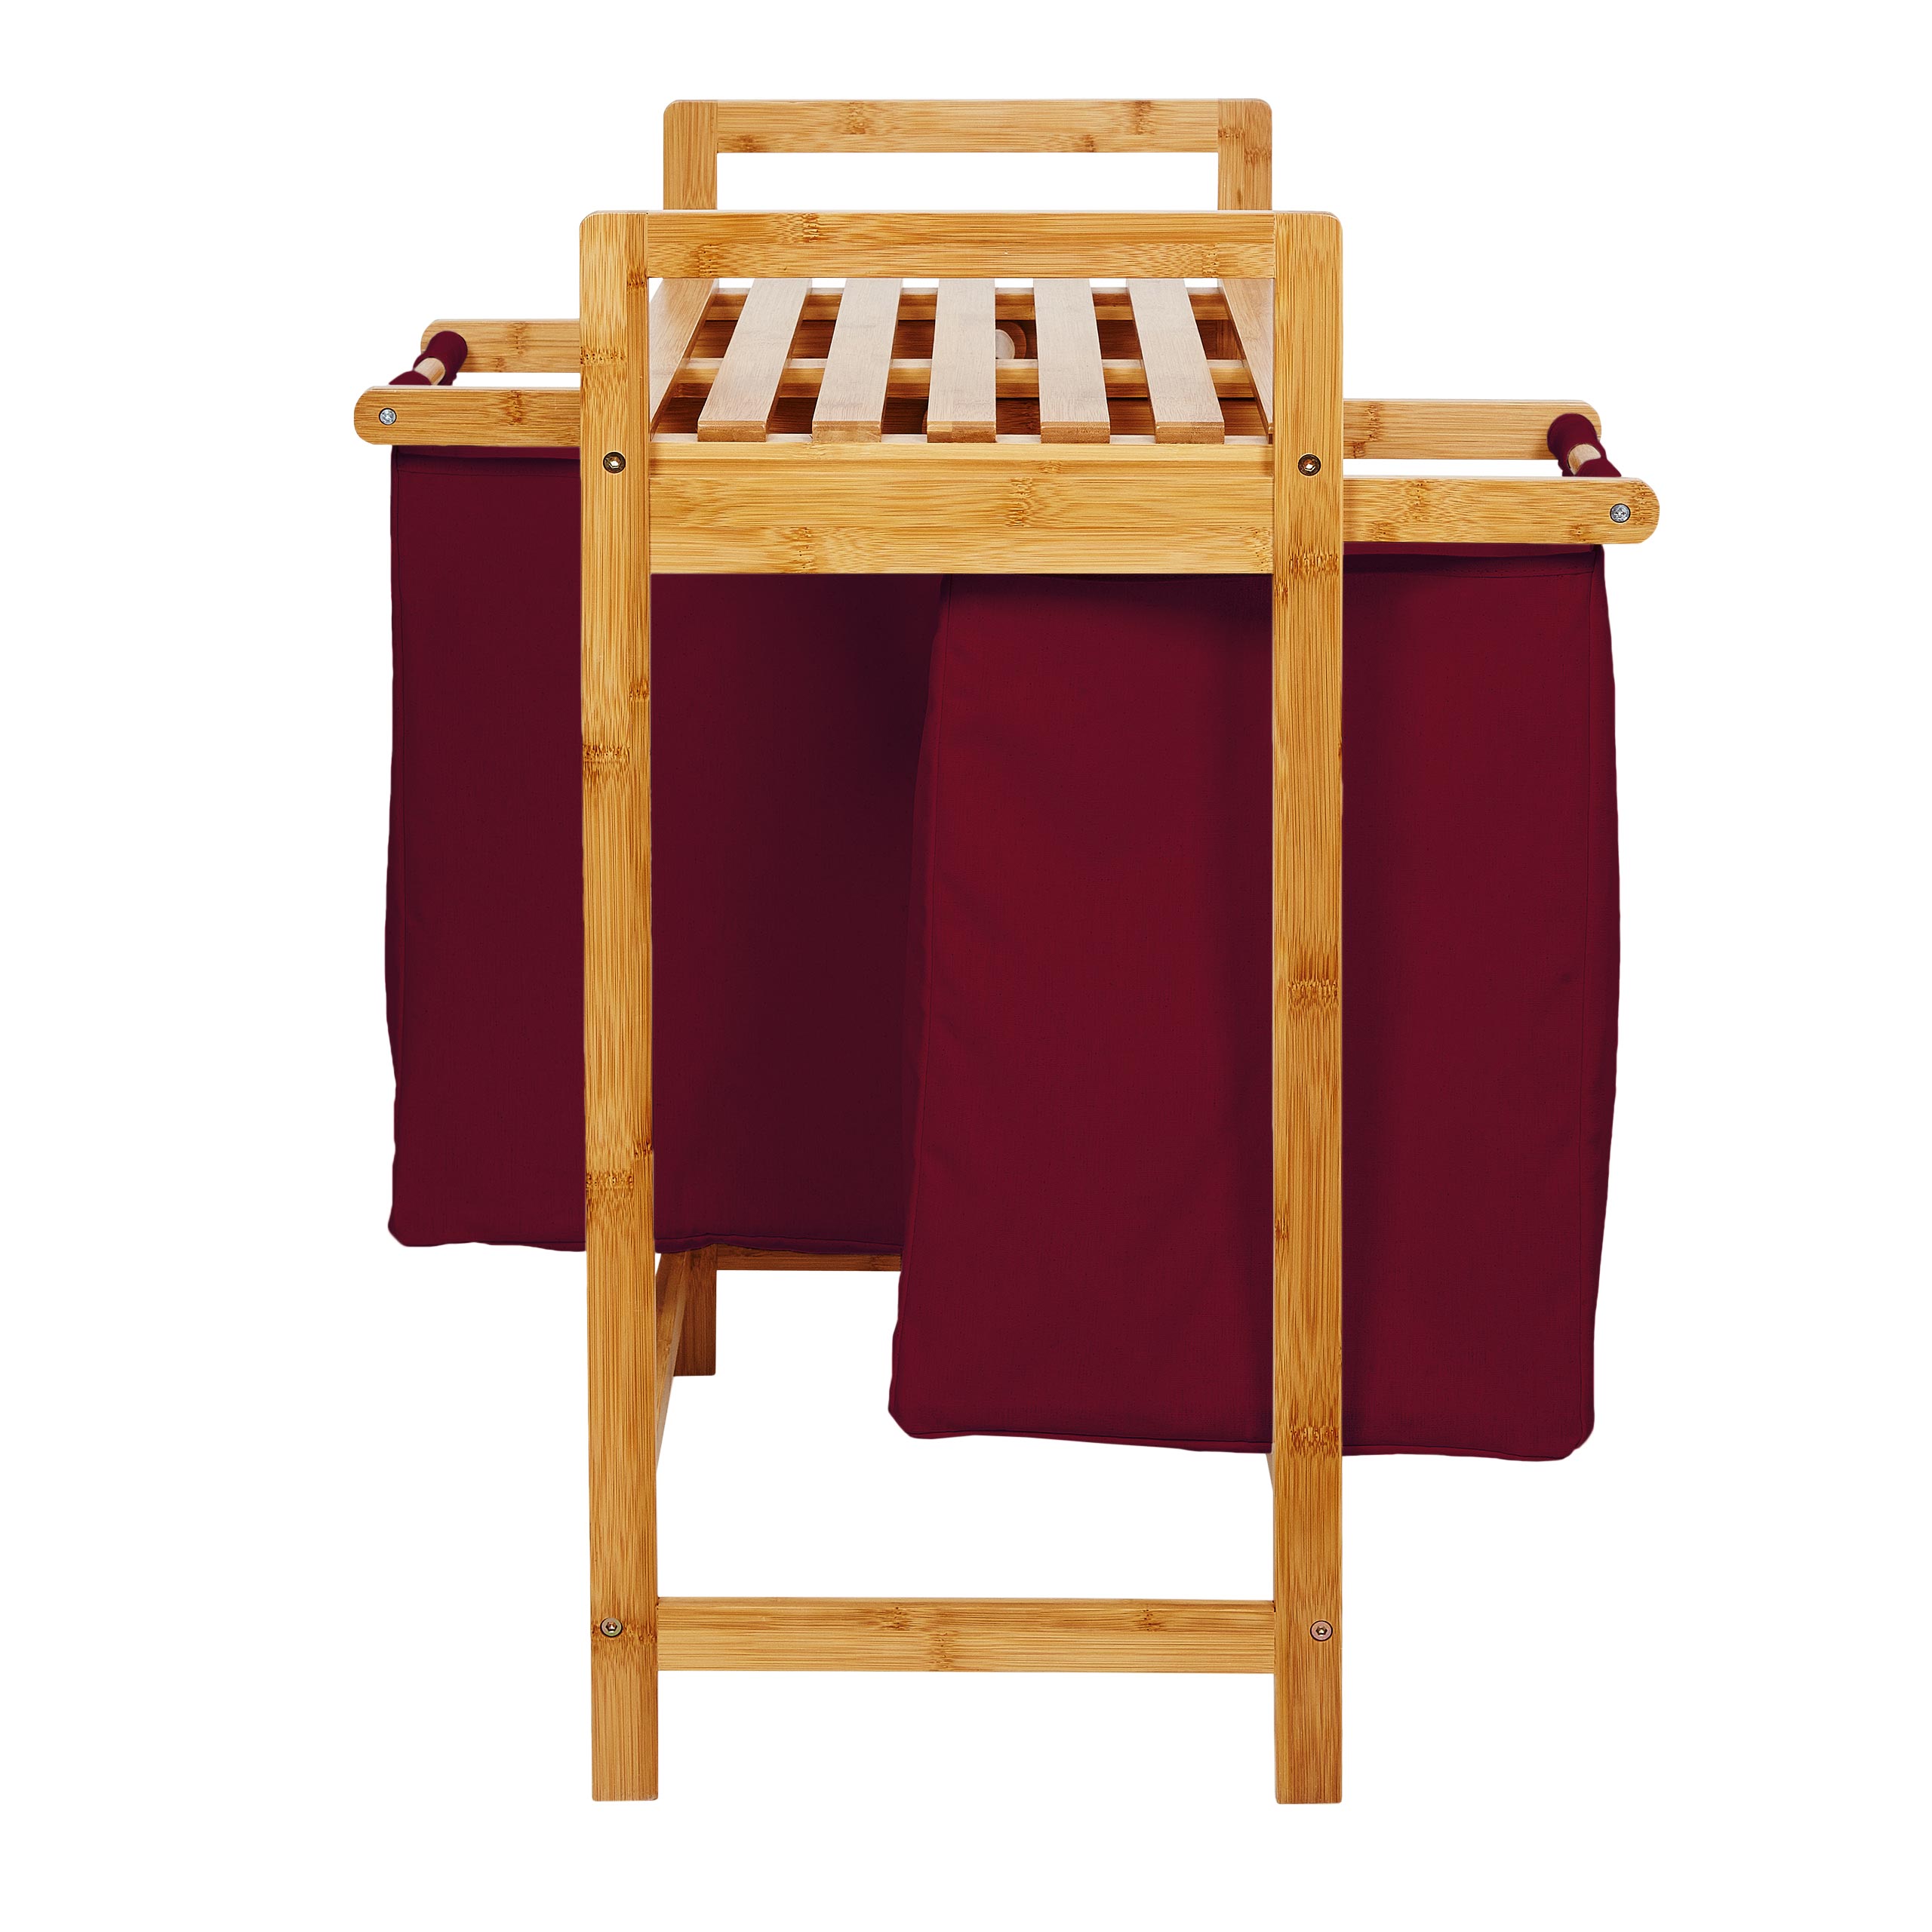 Wäschekorb aus Bambus mit 2 ausziehbaren Wäschesäcken - Größe ca. 73 cm Höhe x 64 cm Breite x 33 cm Tiefe - Farbe Dunkelrot